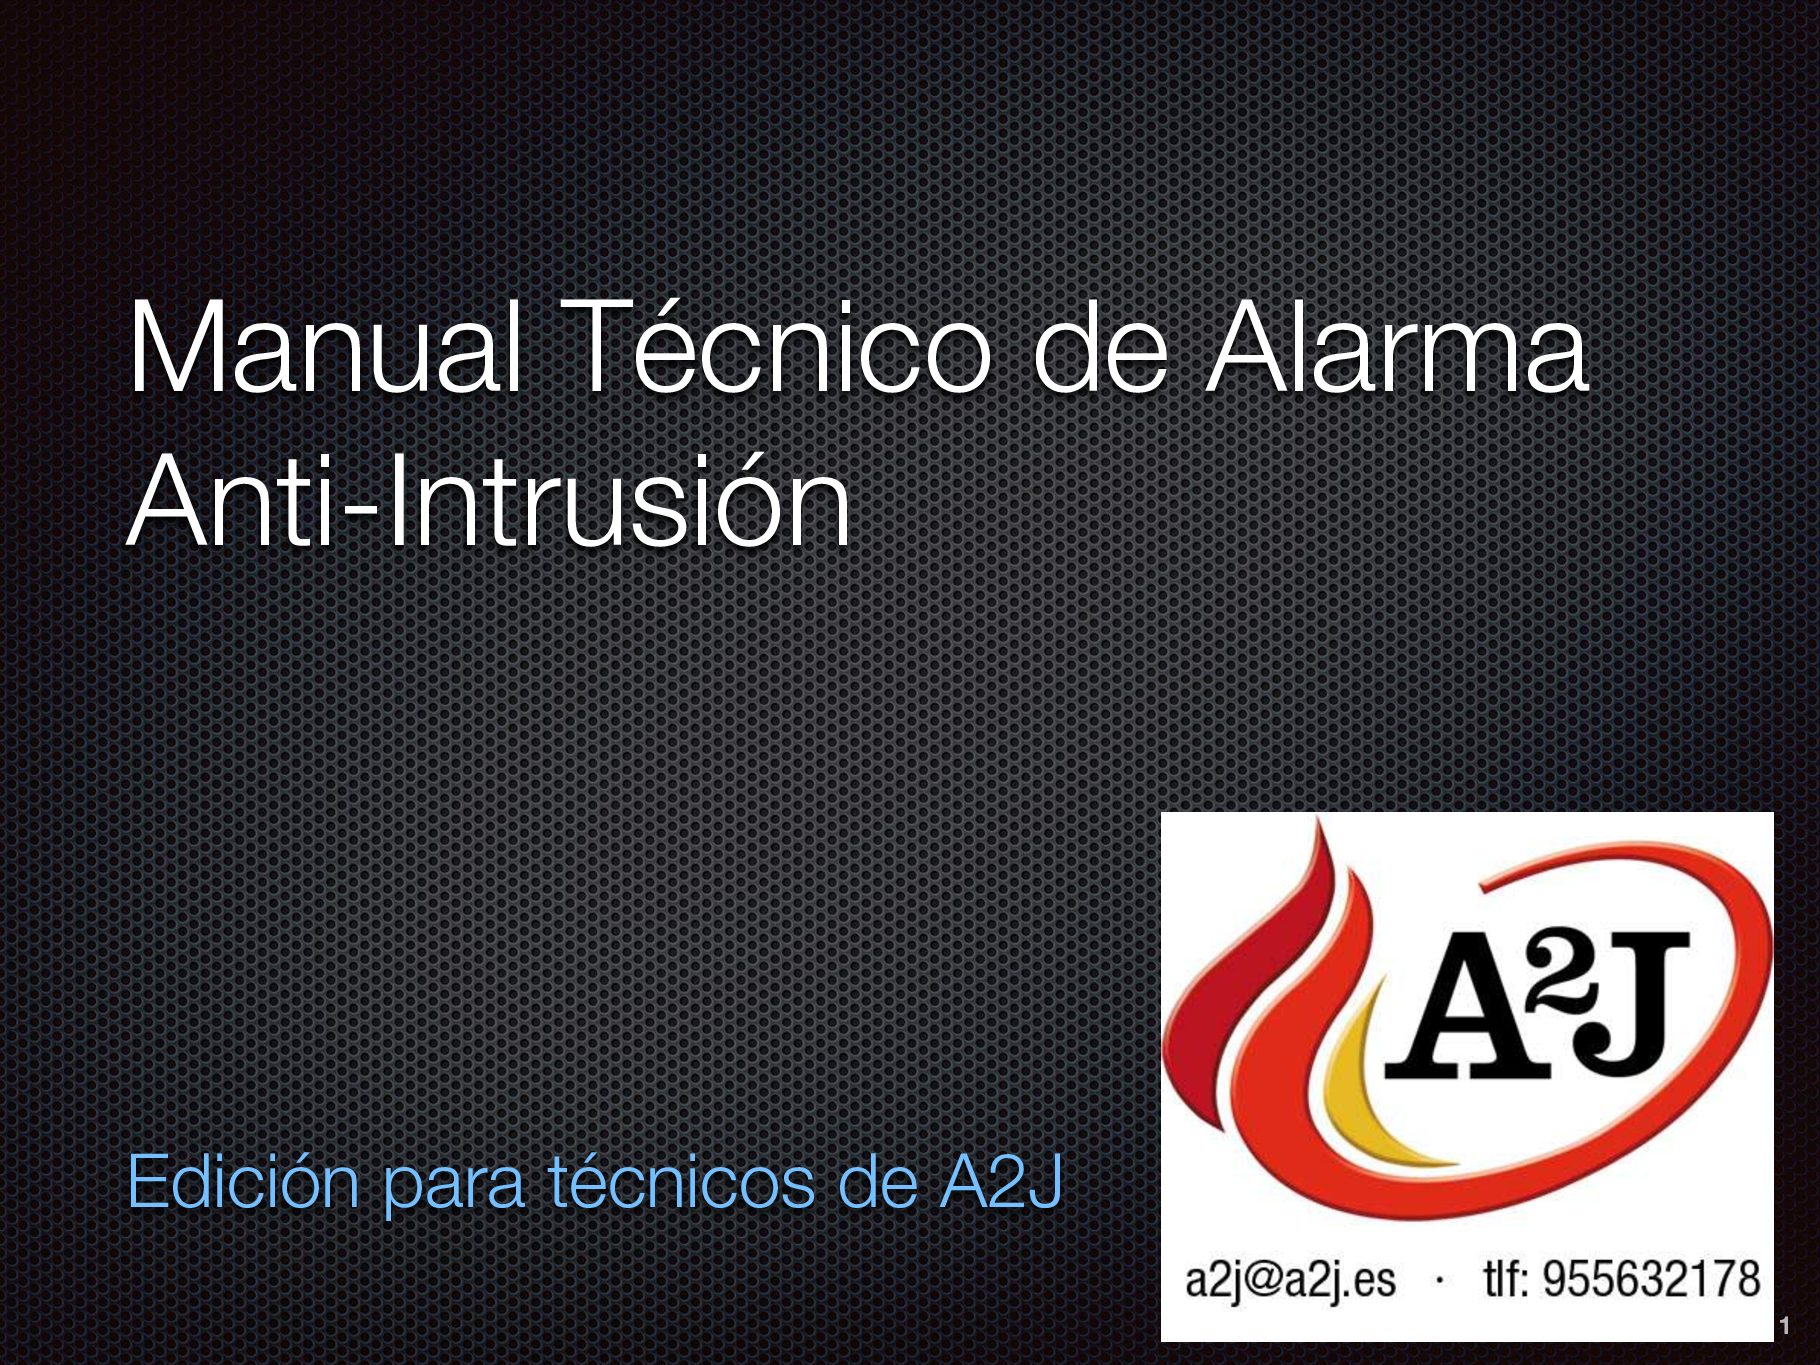 Manual técnico de alarma anti-intrusión - Extintores Pisa A2J